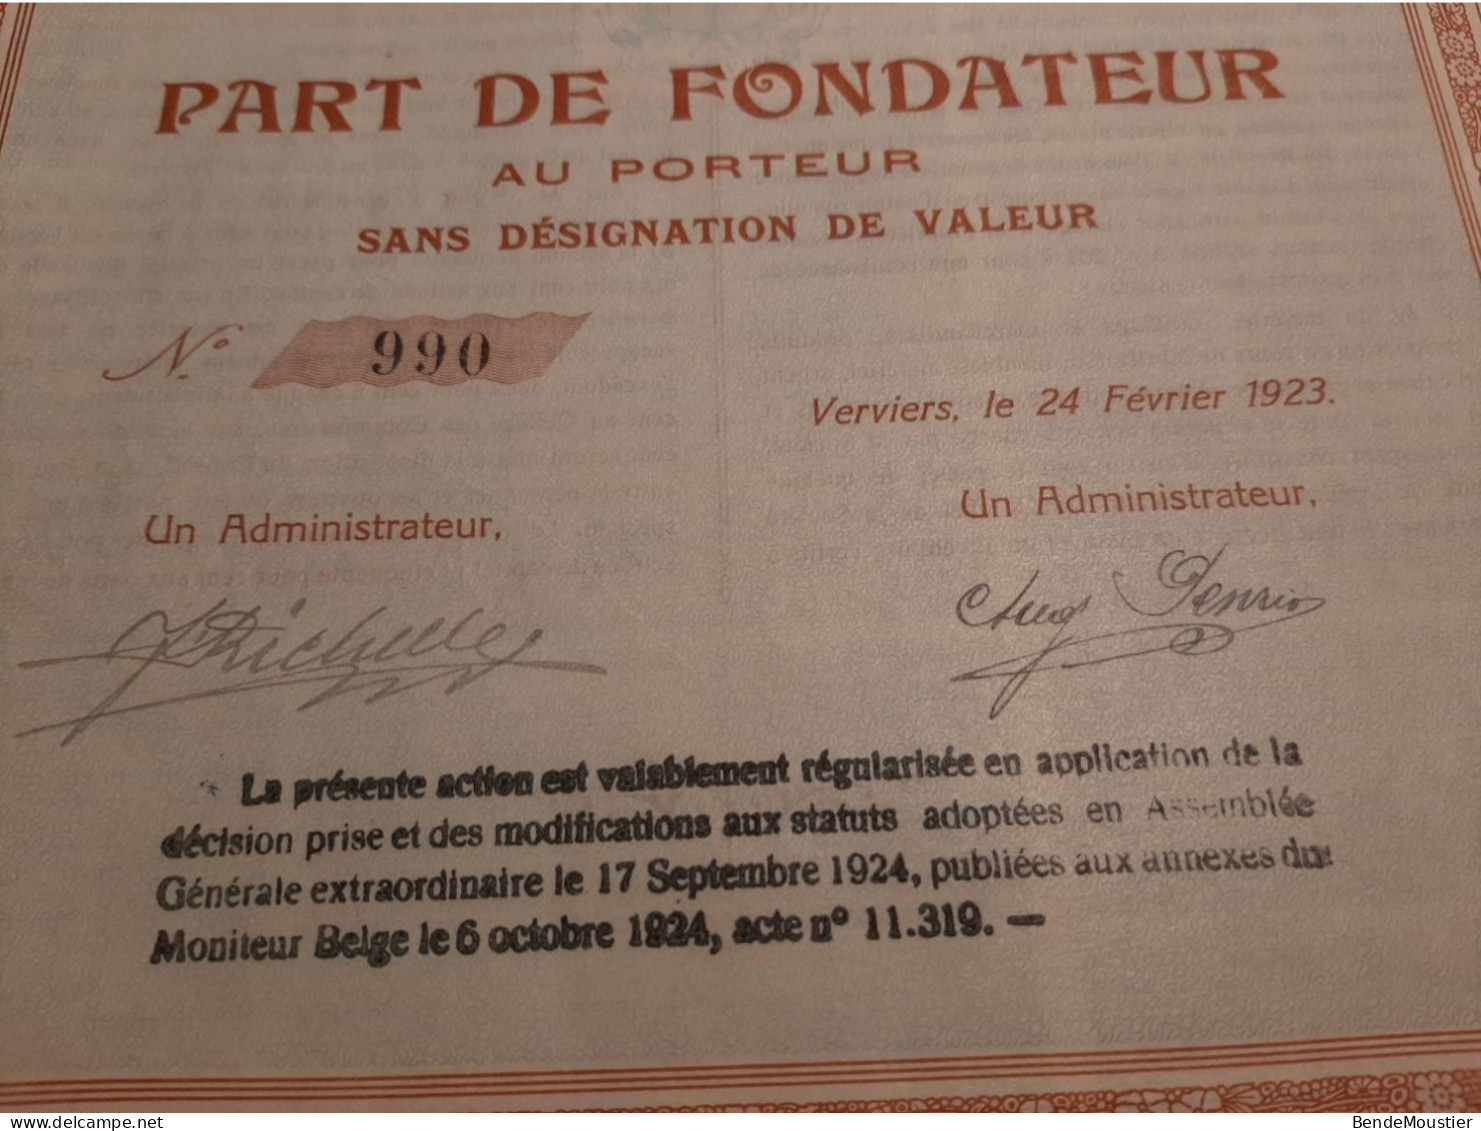 La Nationale De Chaussures S.A. - Vervier Le 24 Février 1923 - Part De Fondateur Au Porteur Sans Désignation De Valeur. - Perfume & Beauty